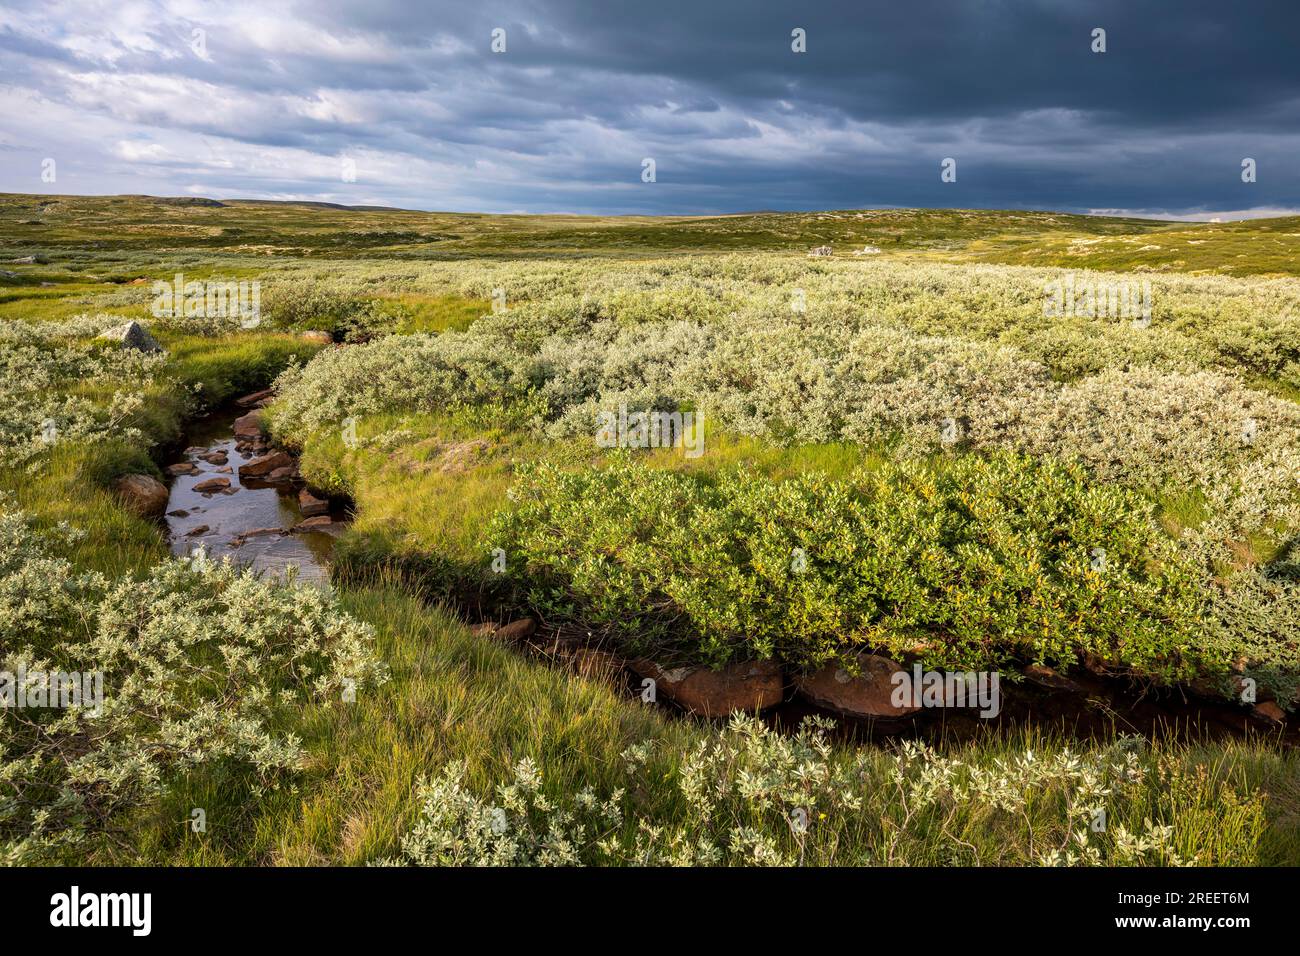 Landscape of the Hardangervidda plateau, Norway Stock Photo